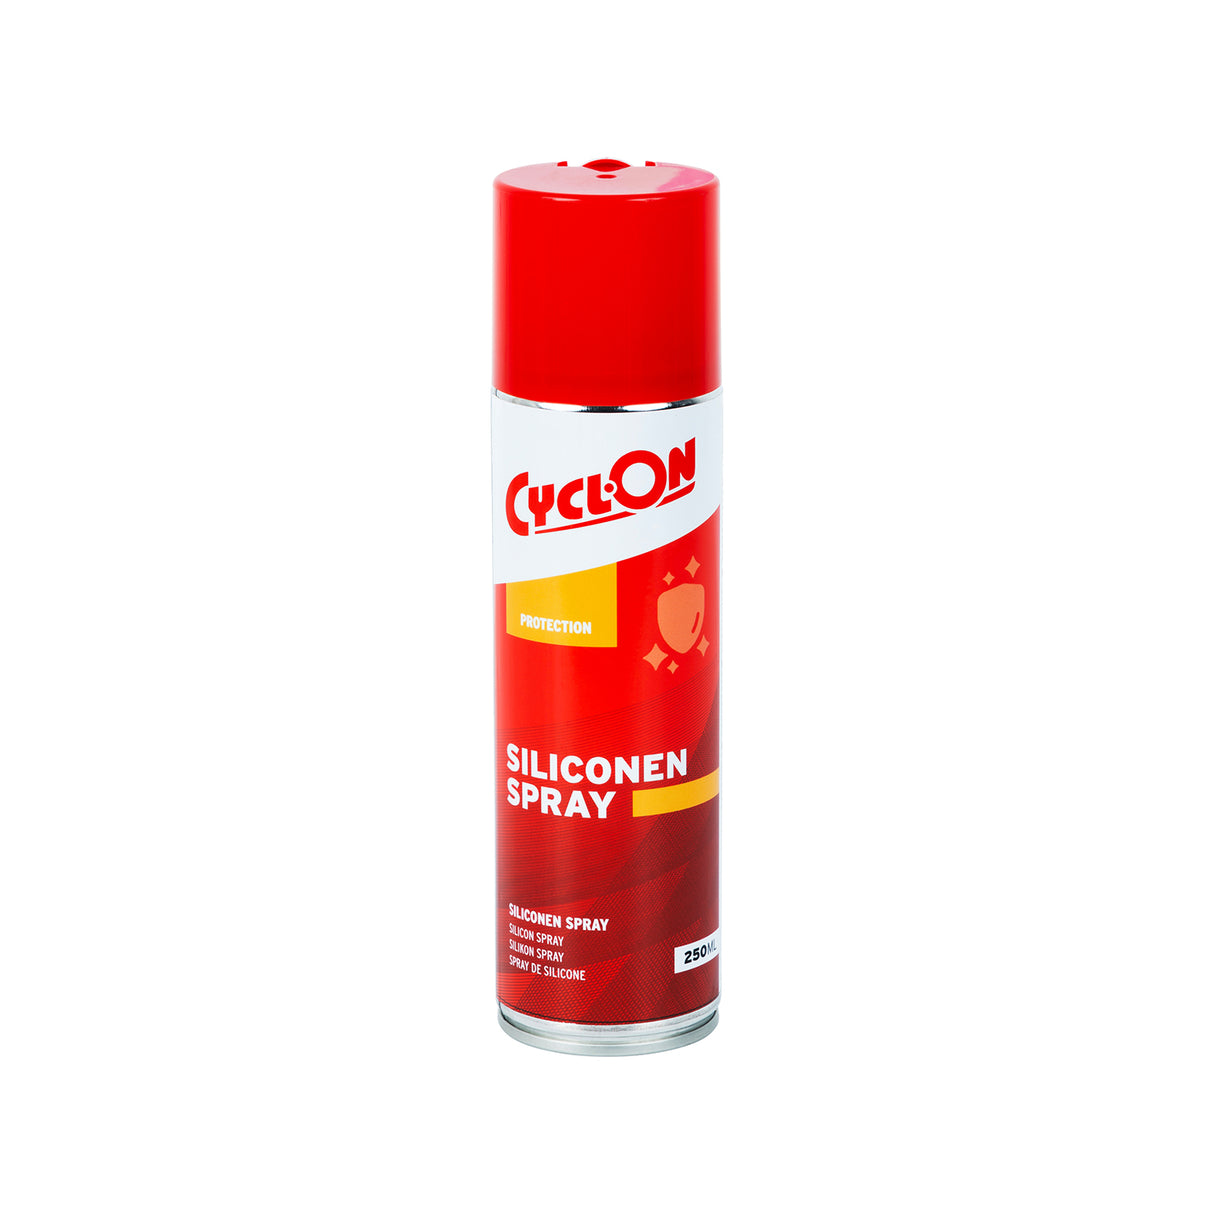 CyclOn Ciliconen Spray